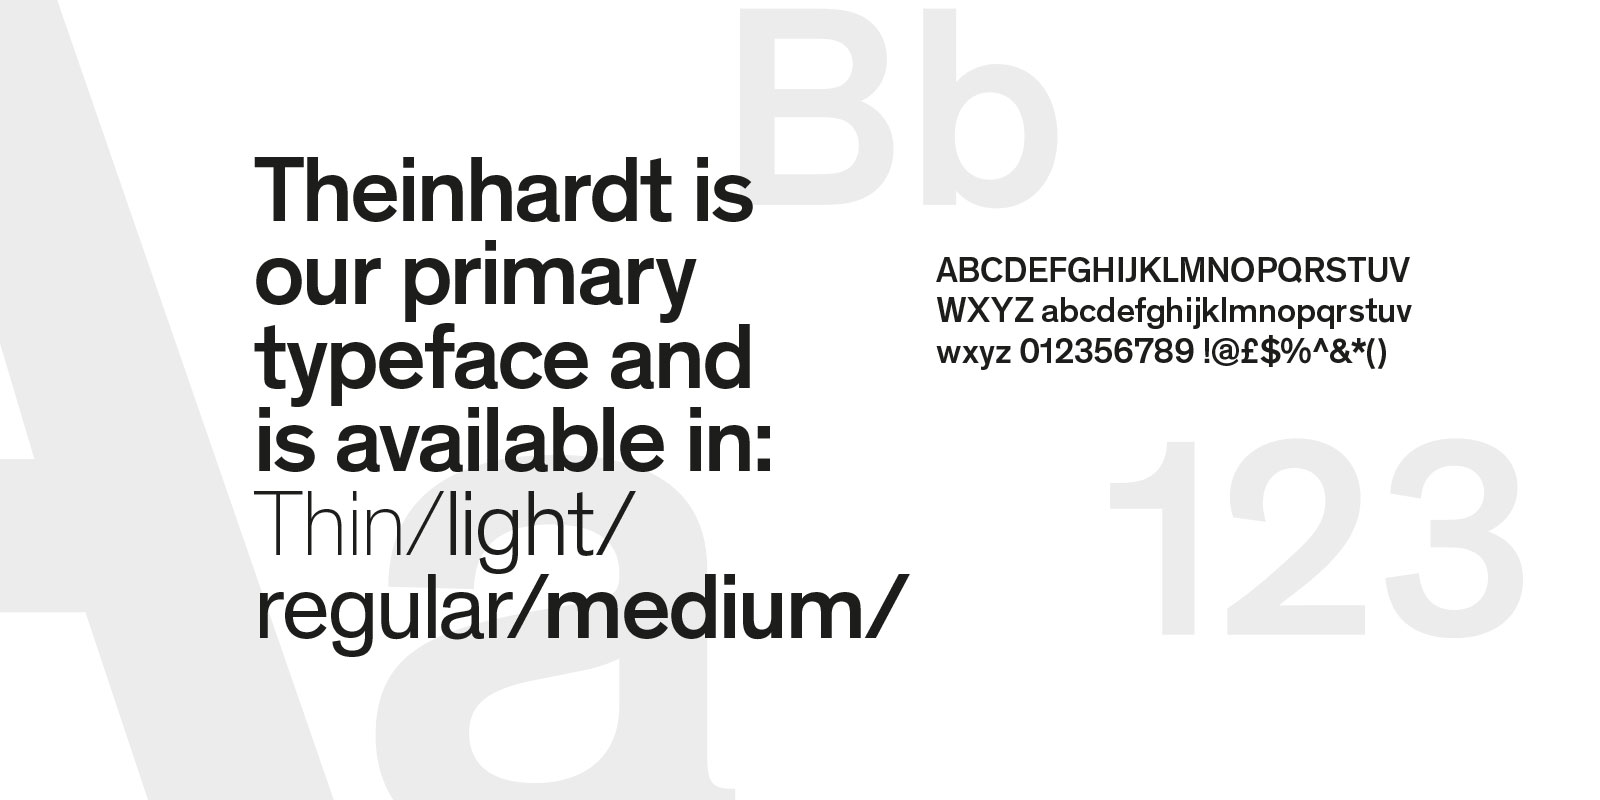 Primary typeface - Theinhardt